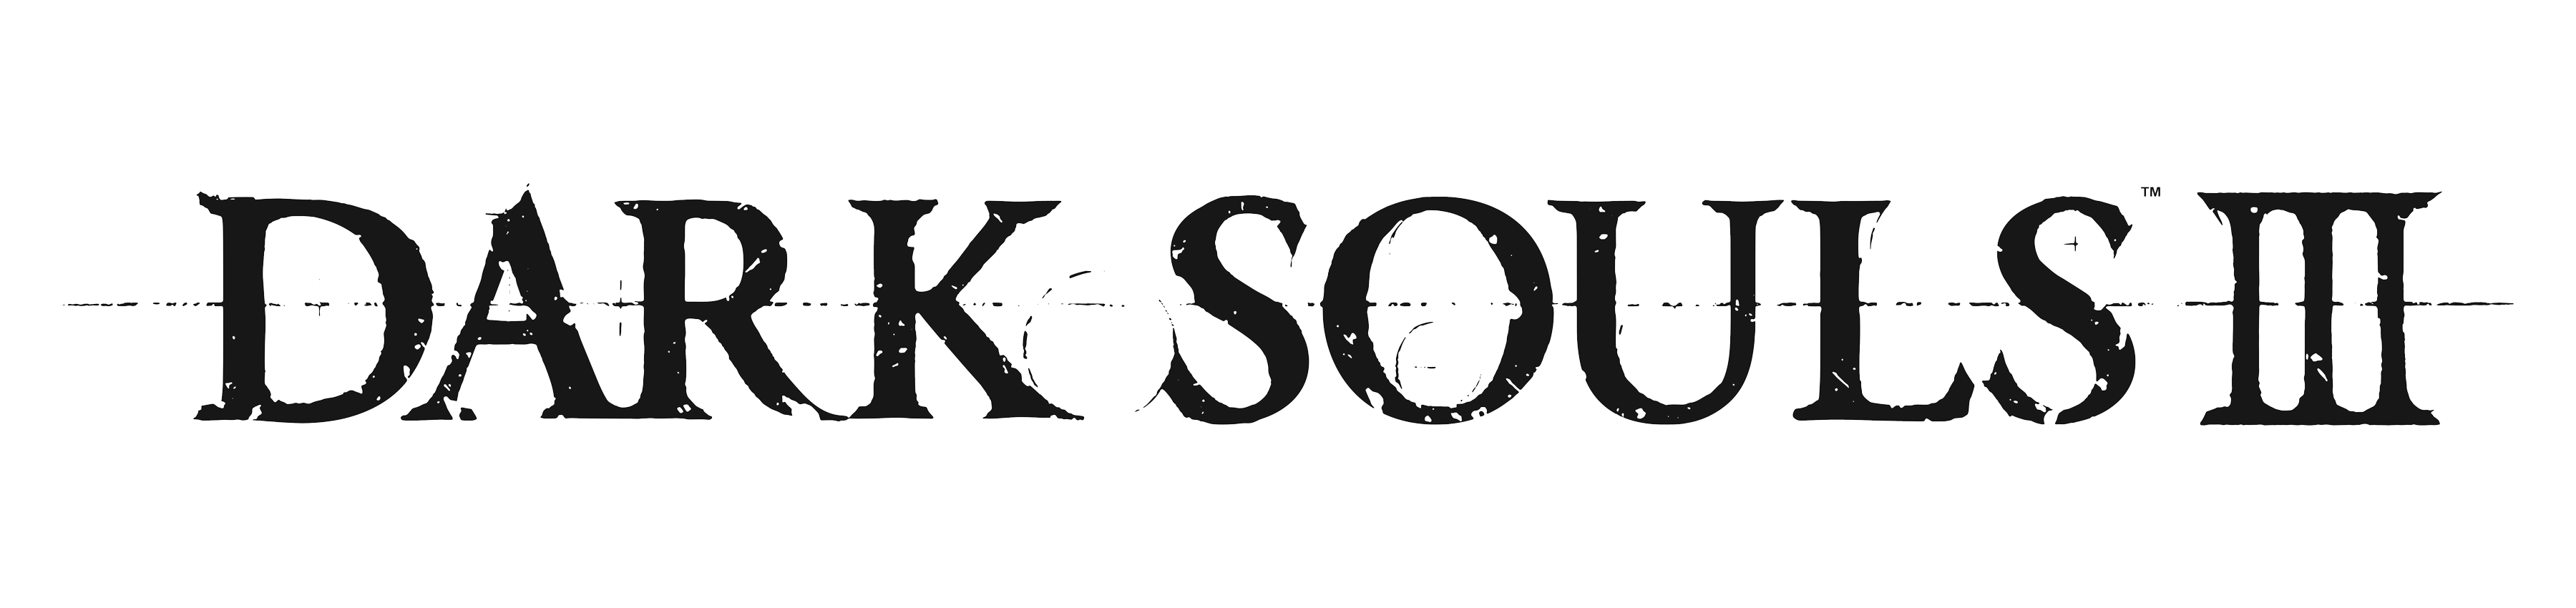 Dark Souls Logo Transparent Background